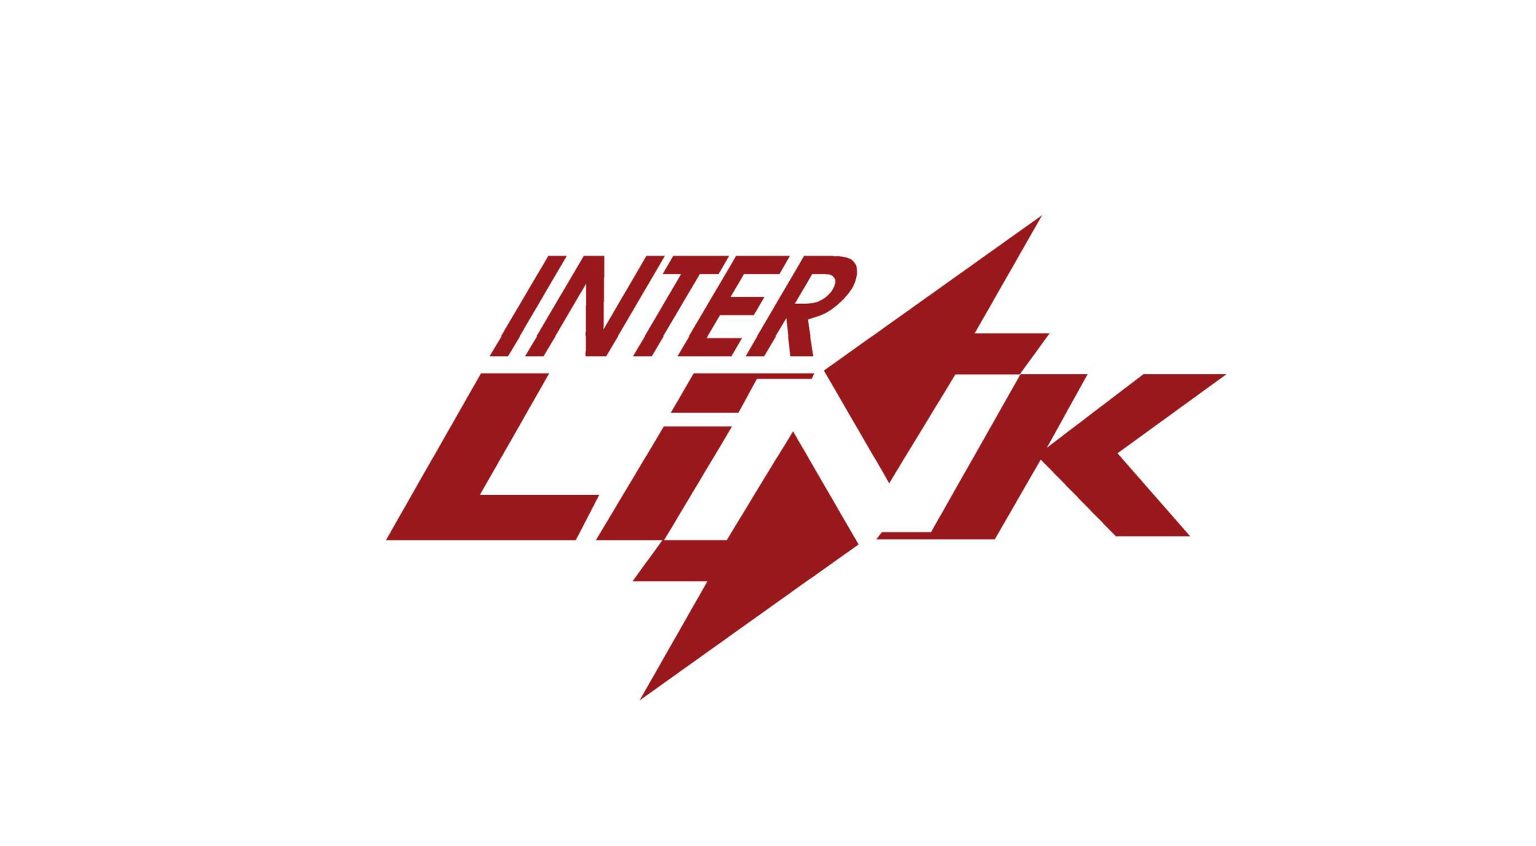 interlink logo1 scaled